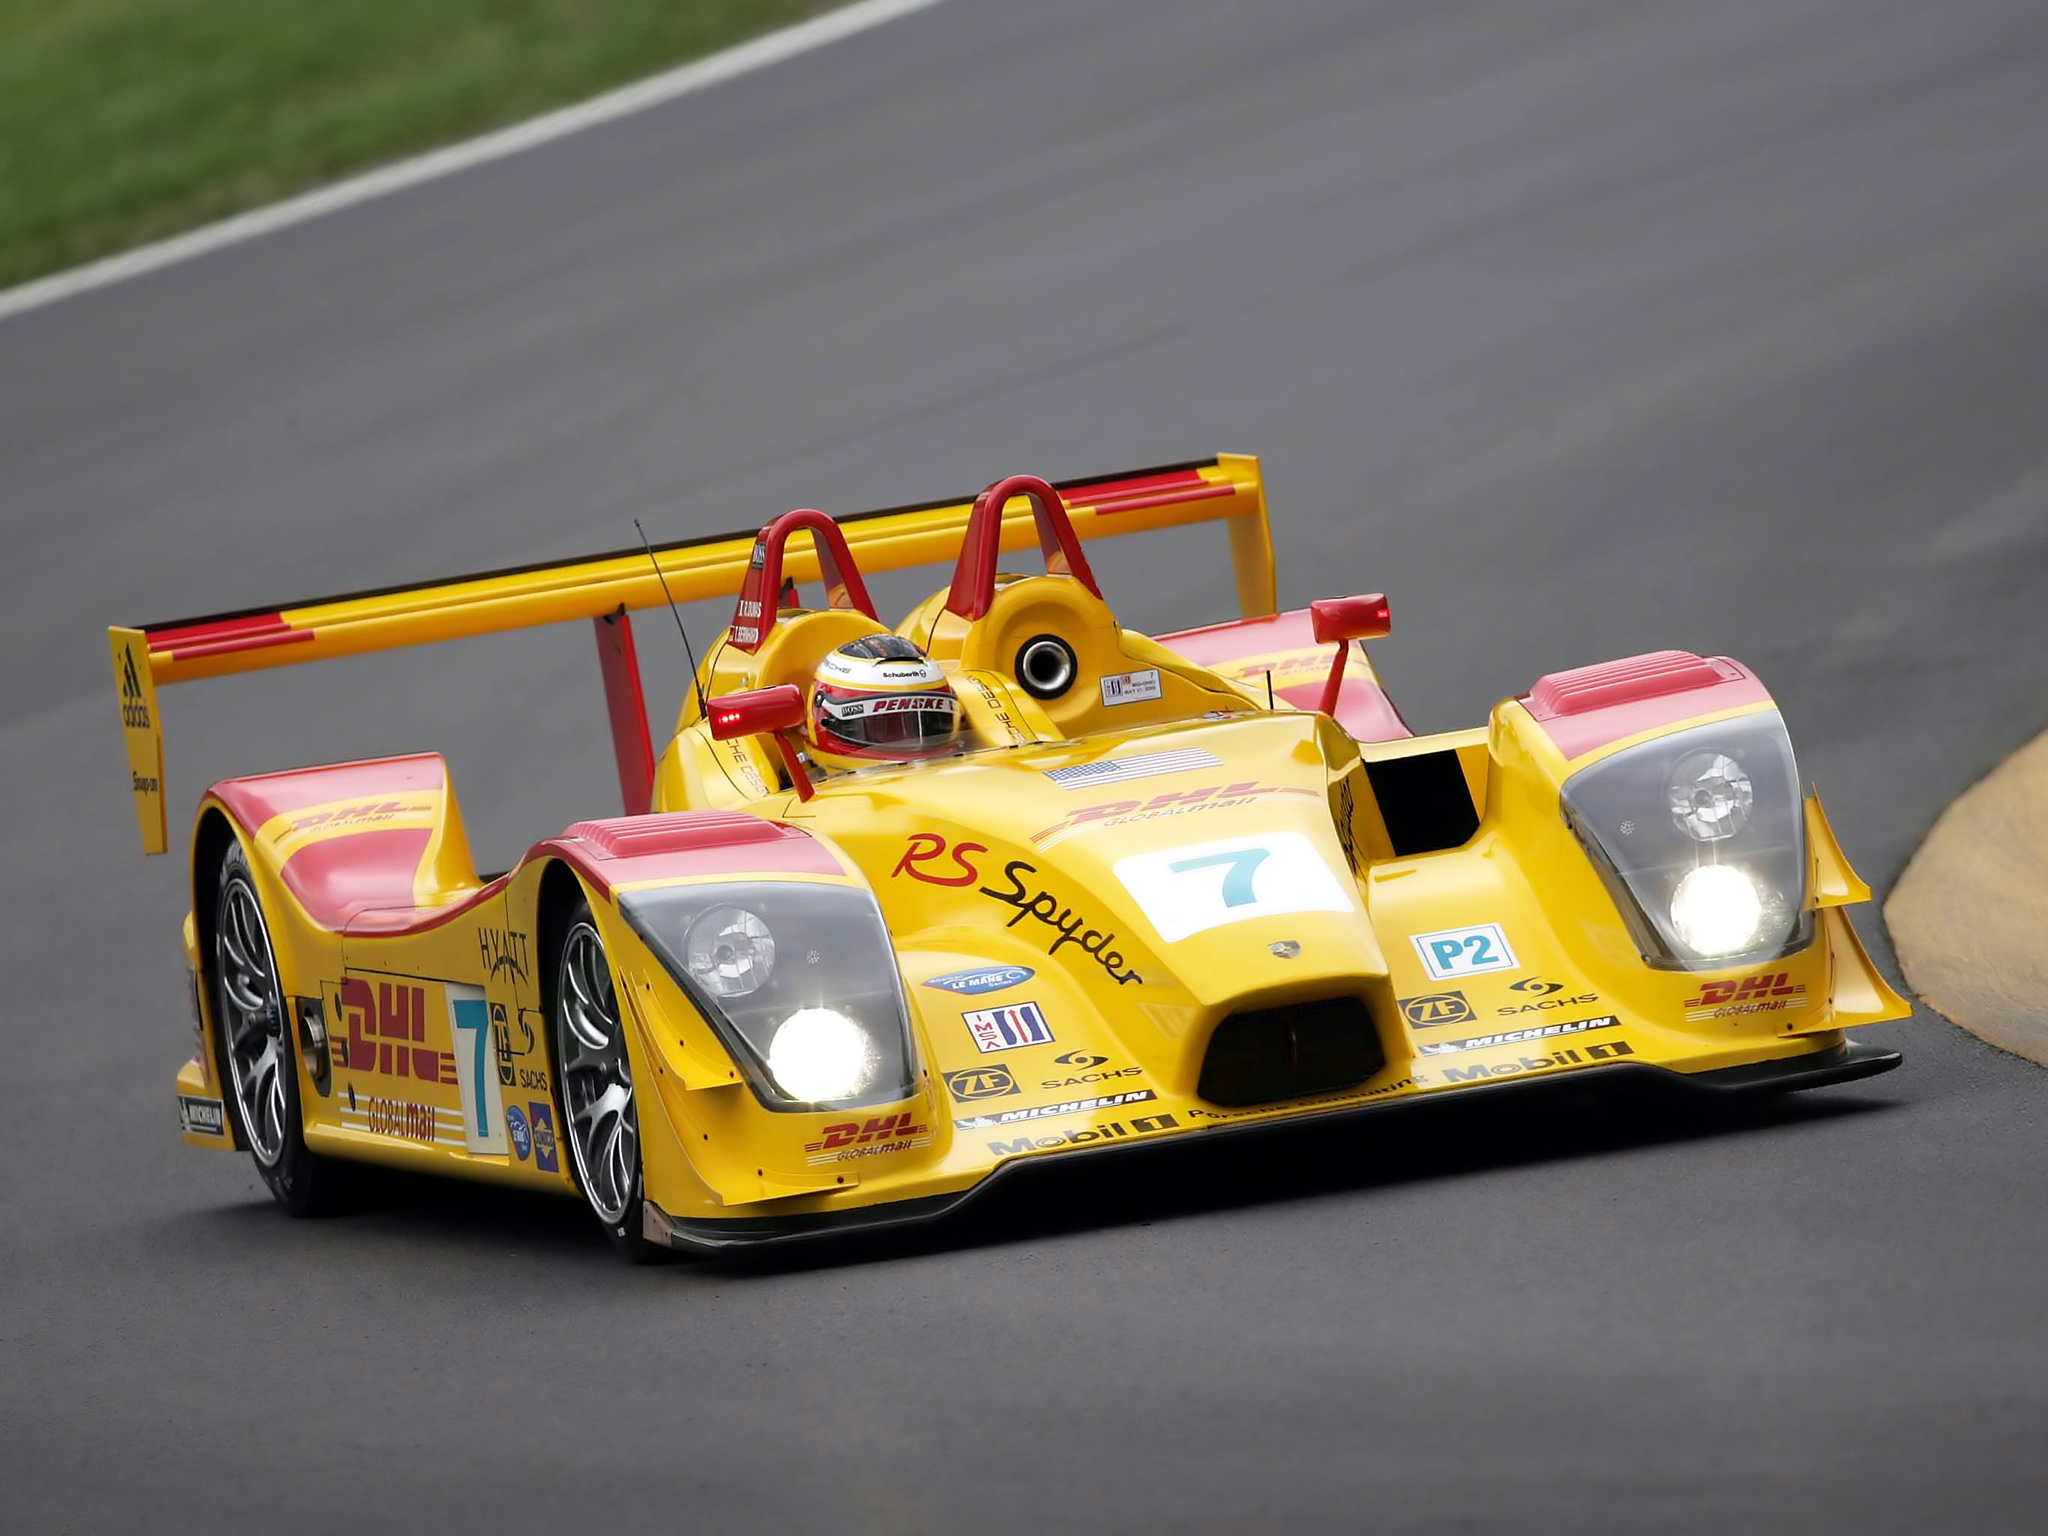 2006, Porsche, Rs, Spyder, 9r6, Lmp2, Race, Racing, Le mans Wallpaper